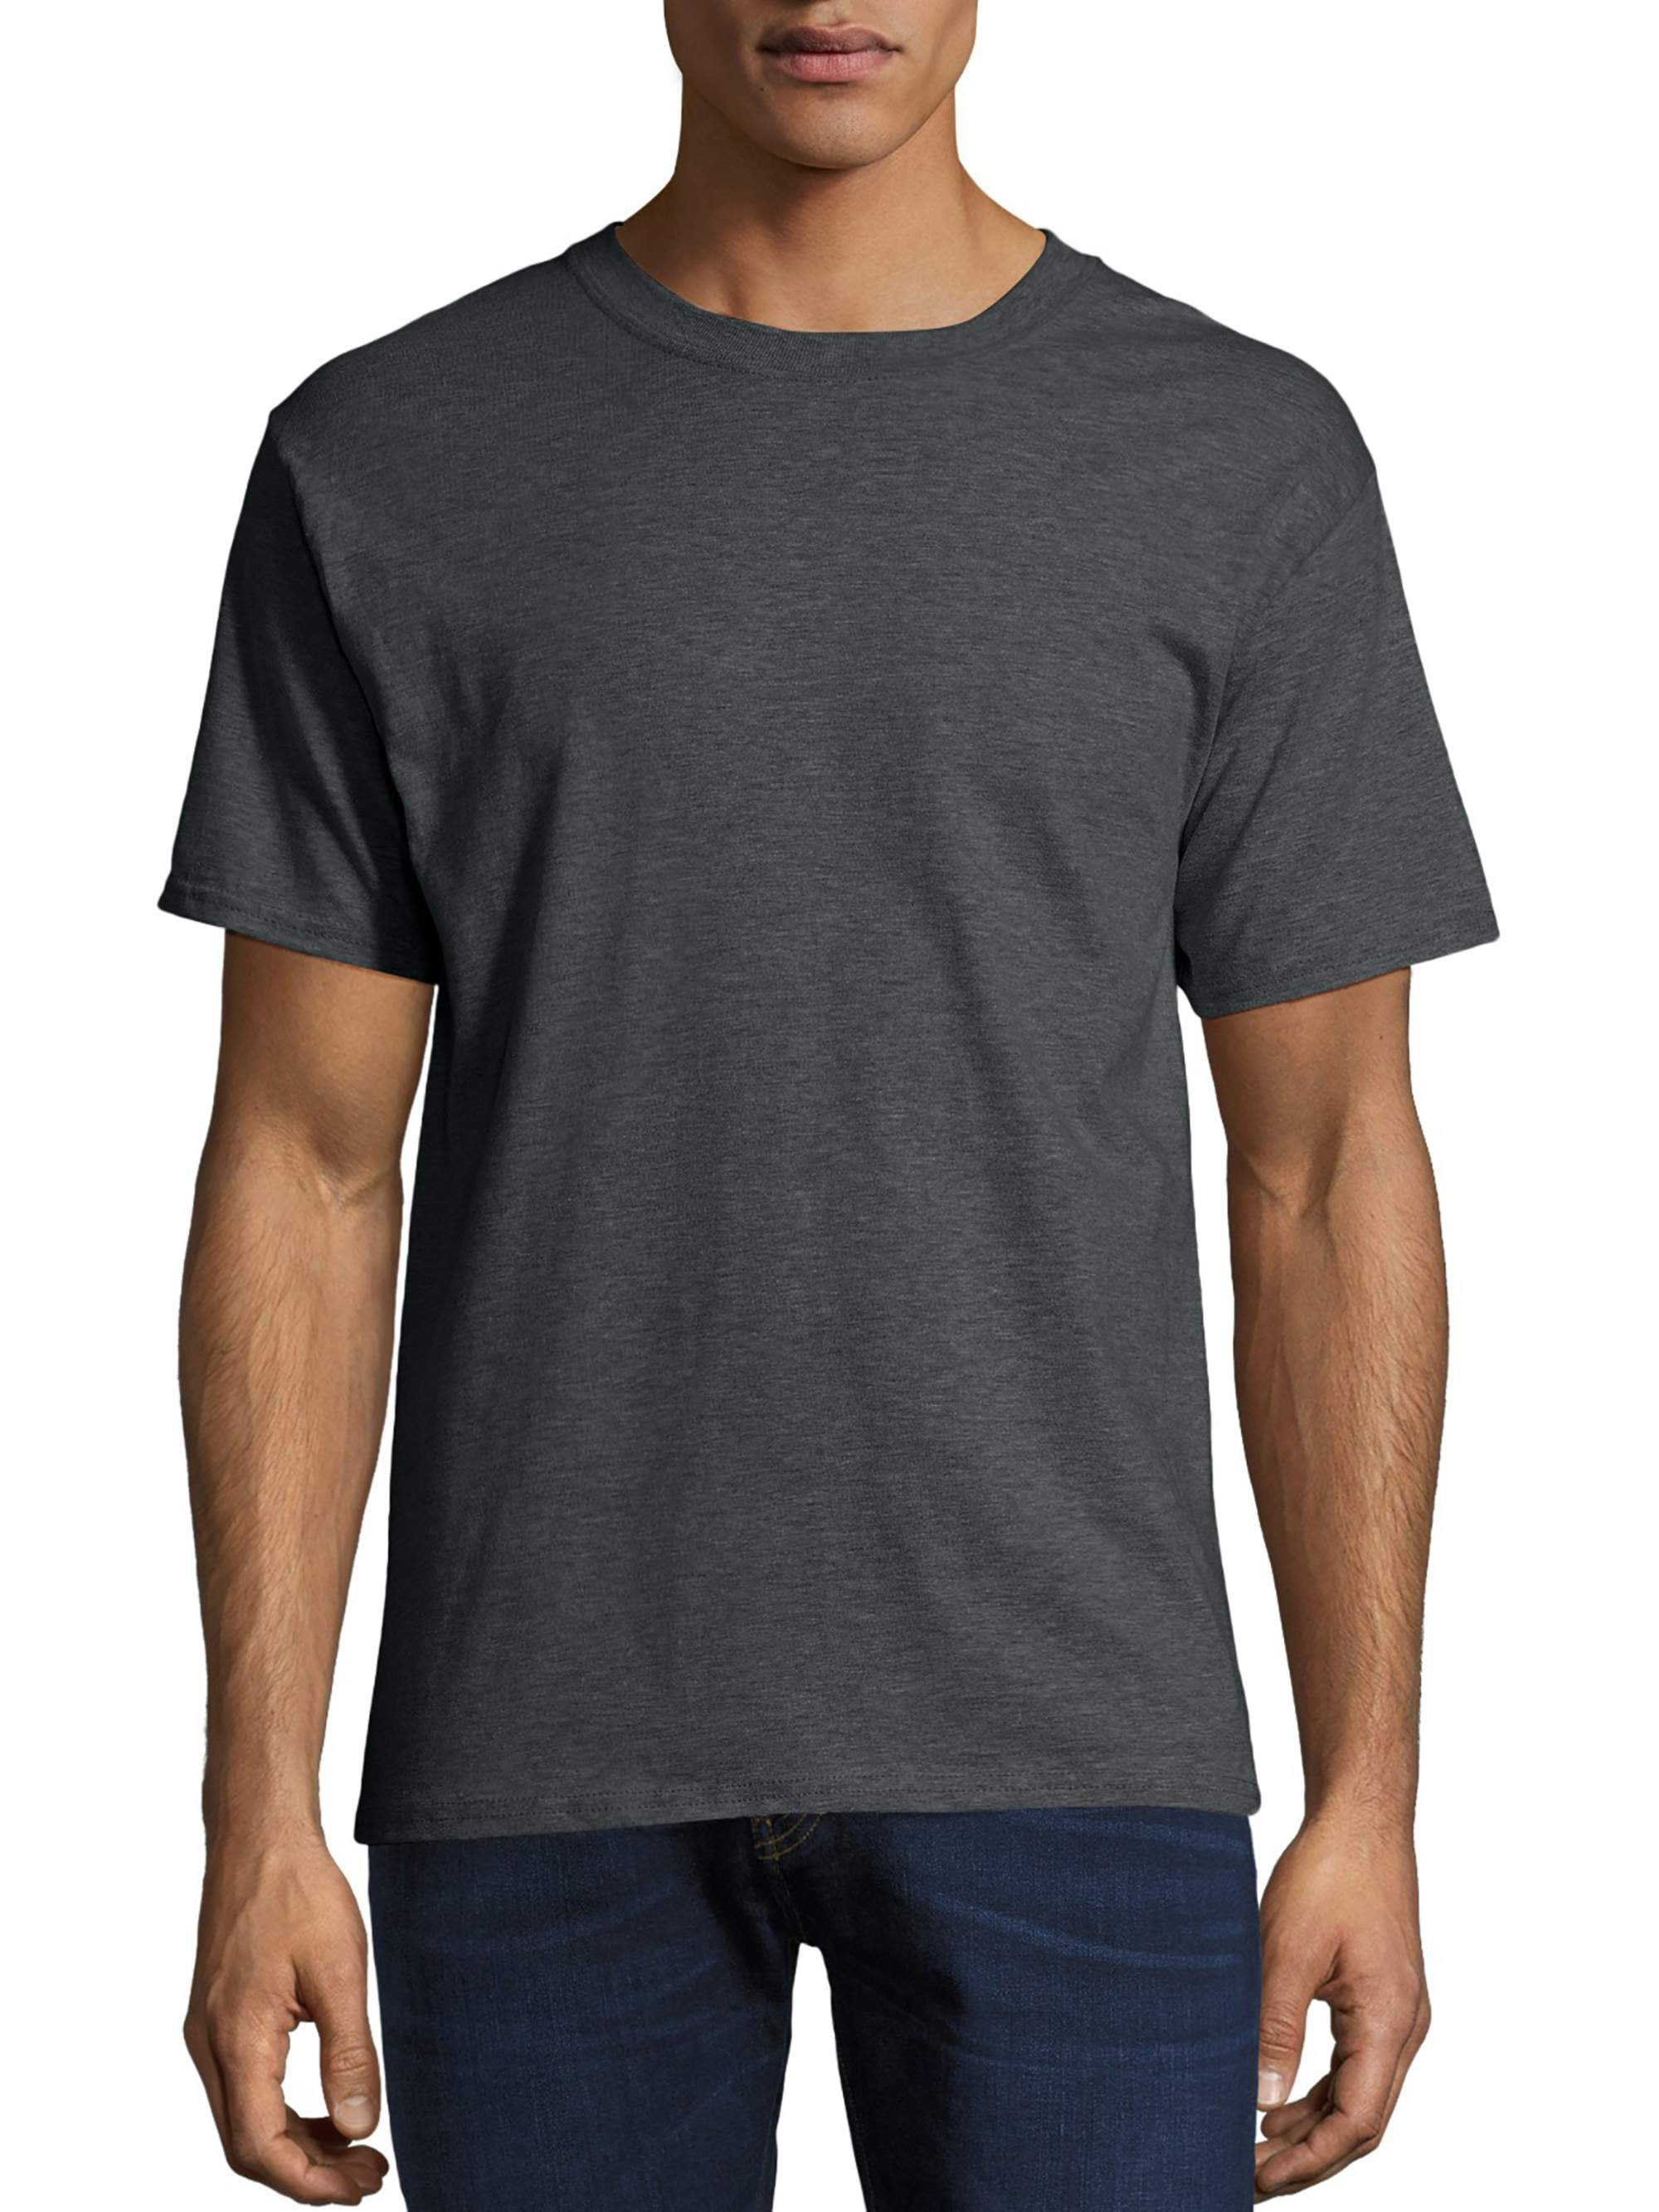 Bonus Ferie pålidelighed Hanes Men's and Big Men's Beefy-T Crew Neck Short Sleeve T-Shirt, Up To 6XL  - Walmart.com